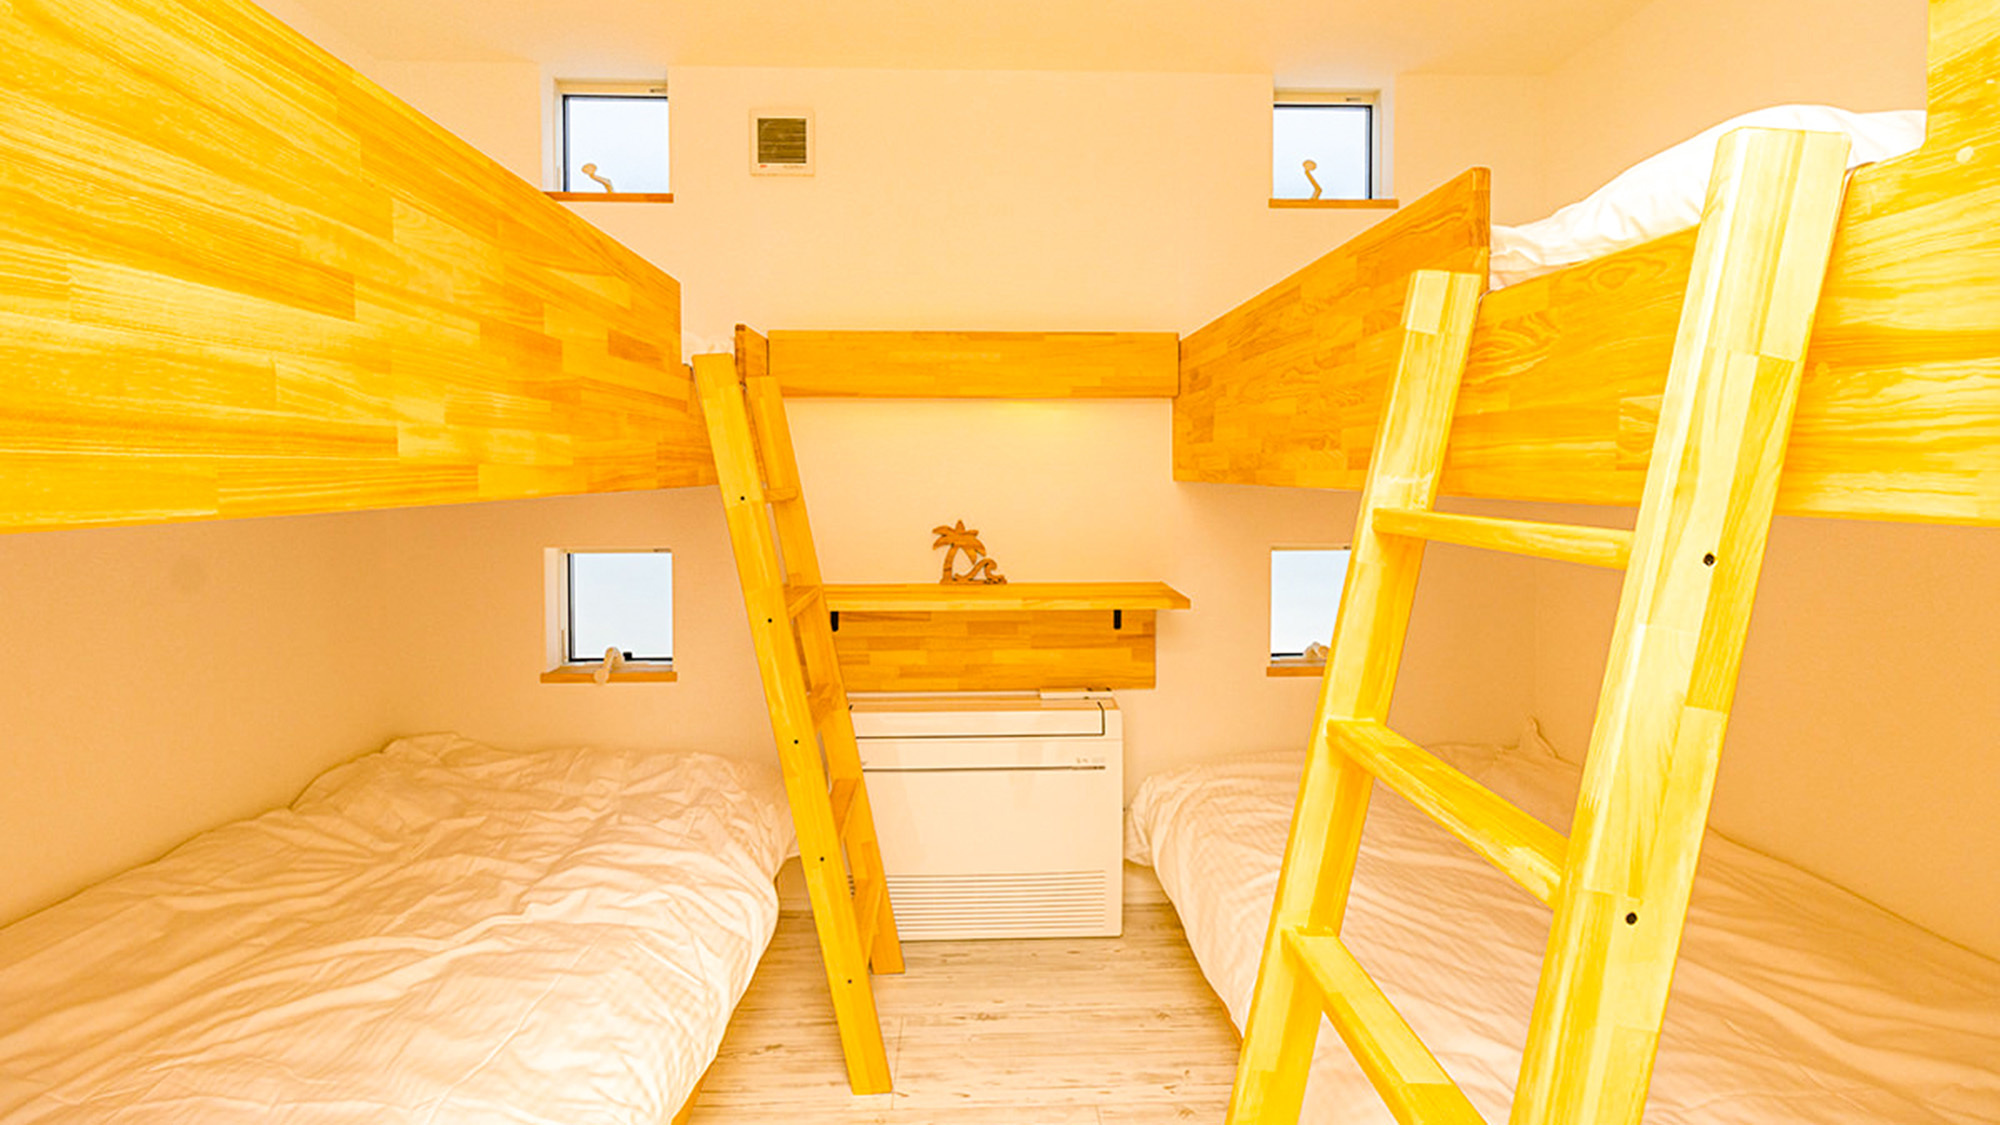 ・2段ベッドの2台を備えたベッドルームはお子様に人気